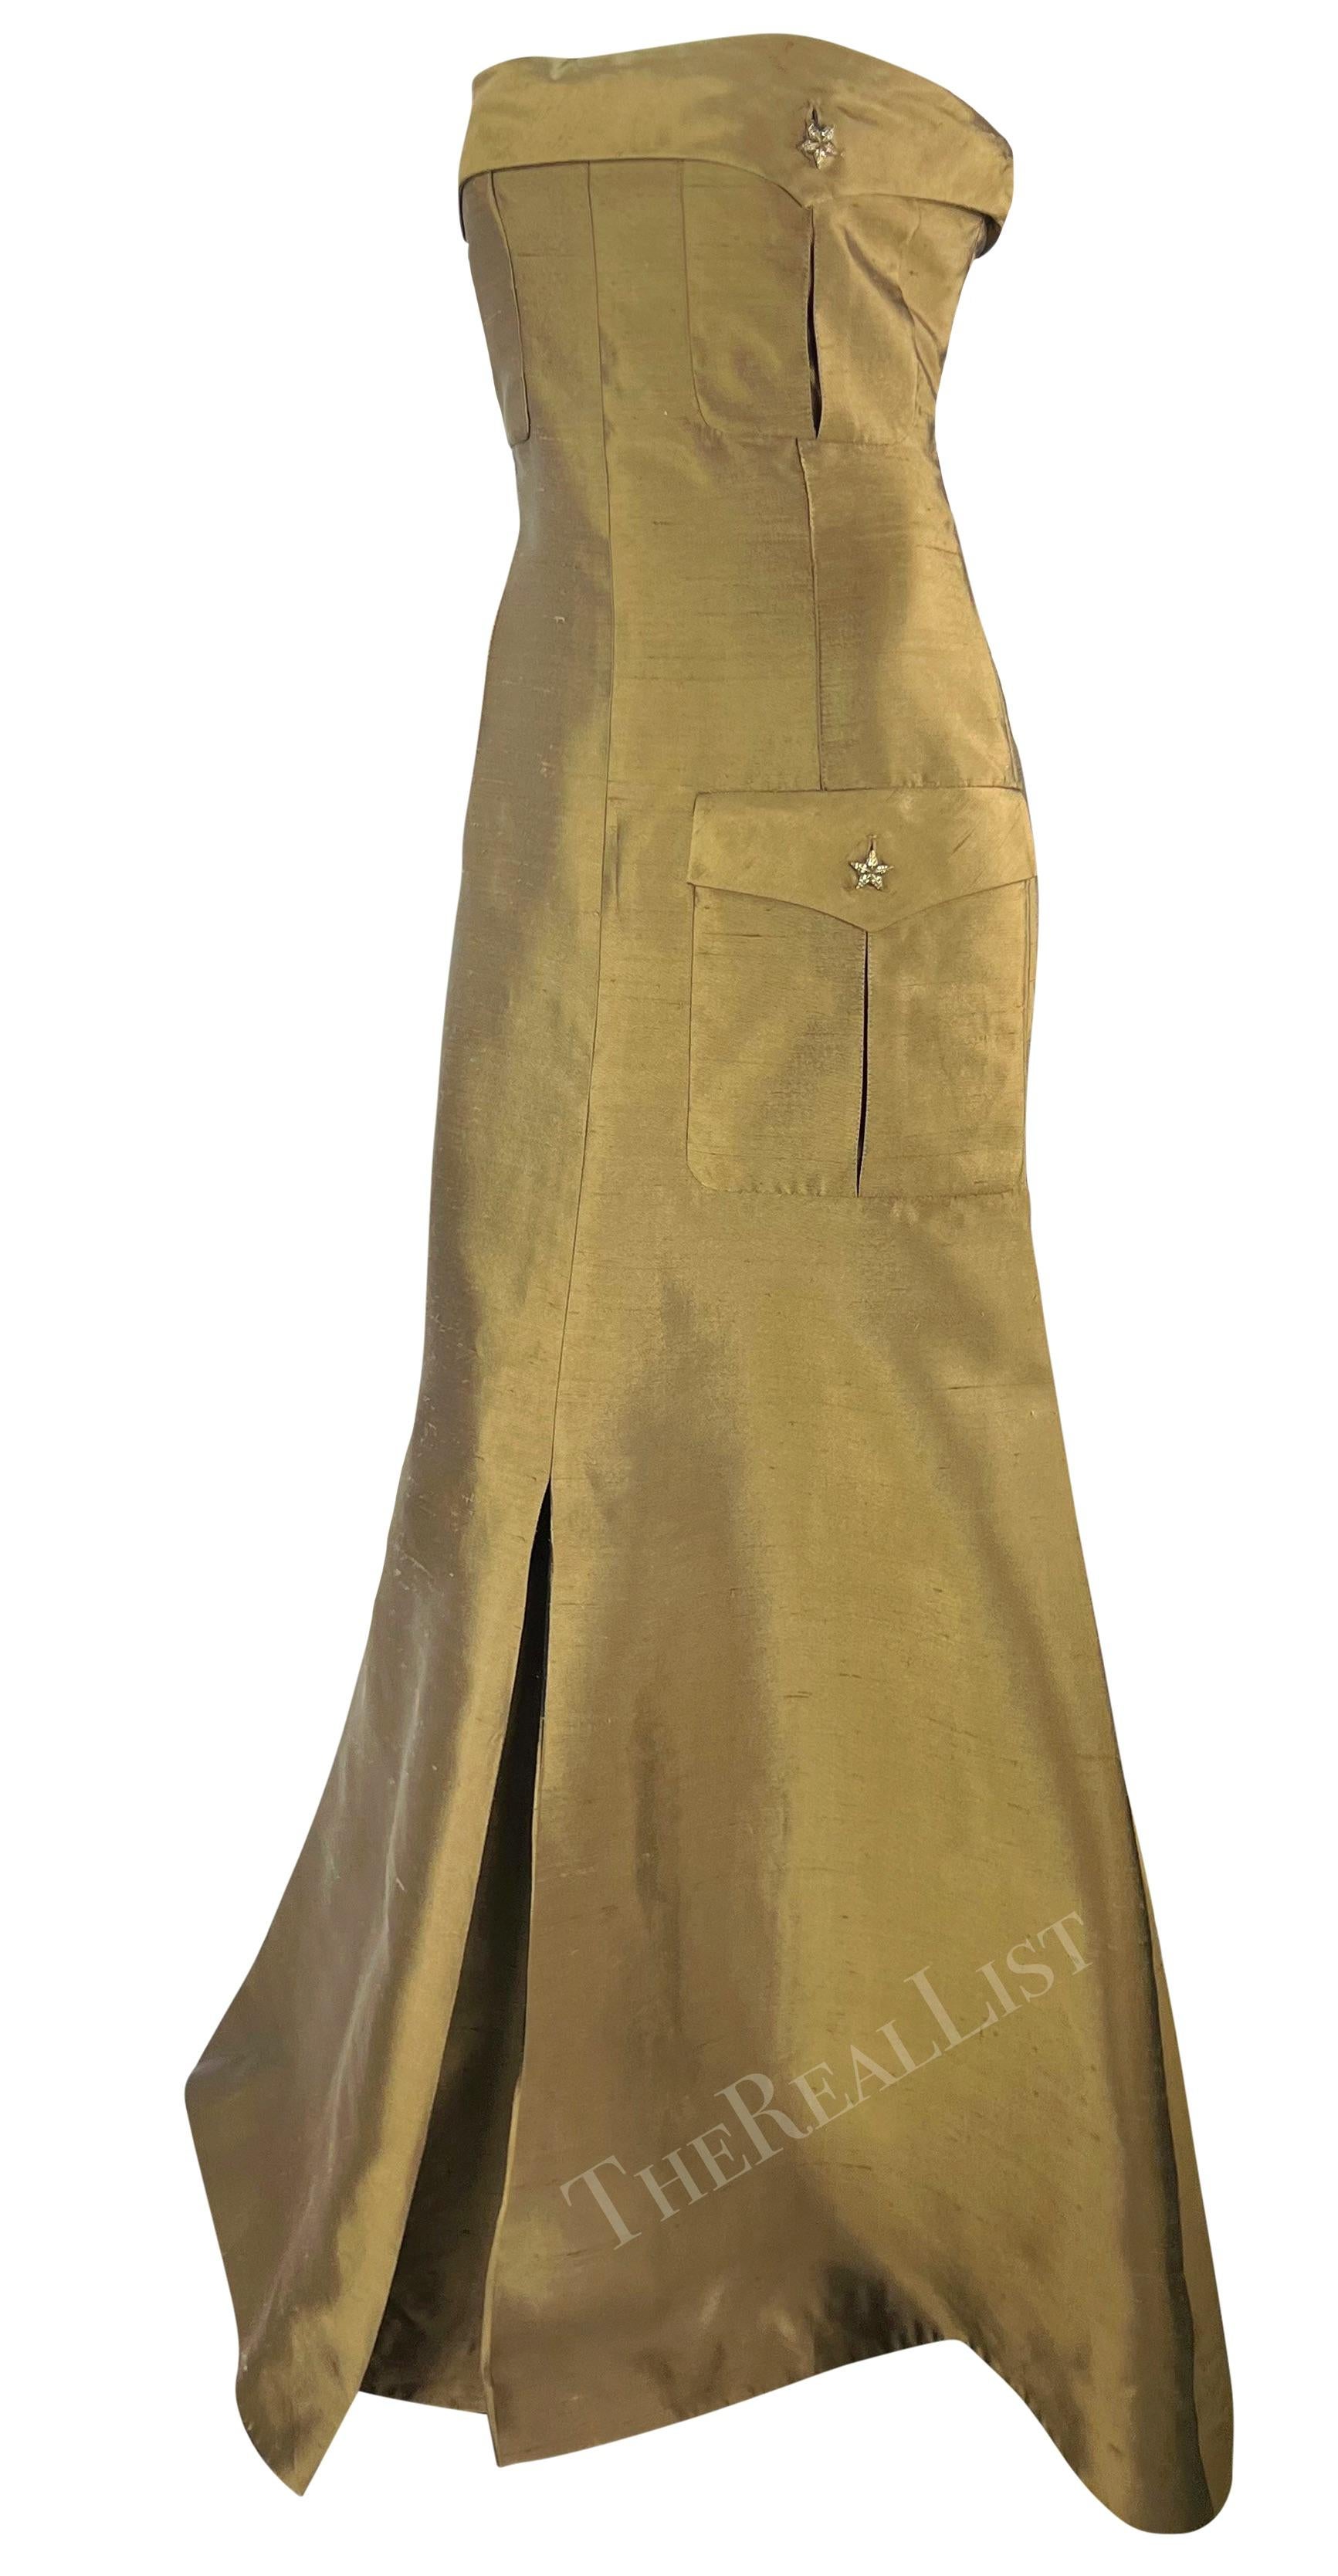 S/S 2003 Valentino Garavani Runway Olive Green Silk Cargo Pocket Strapless Gown 1